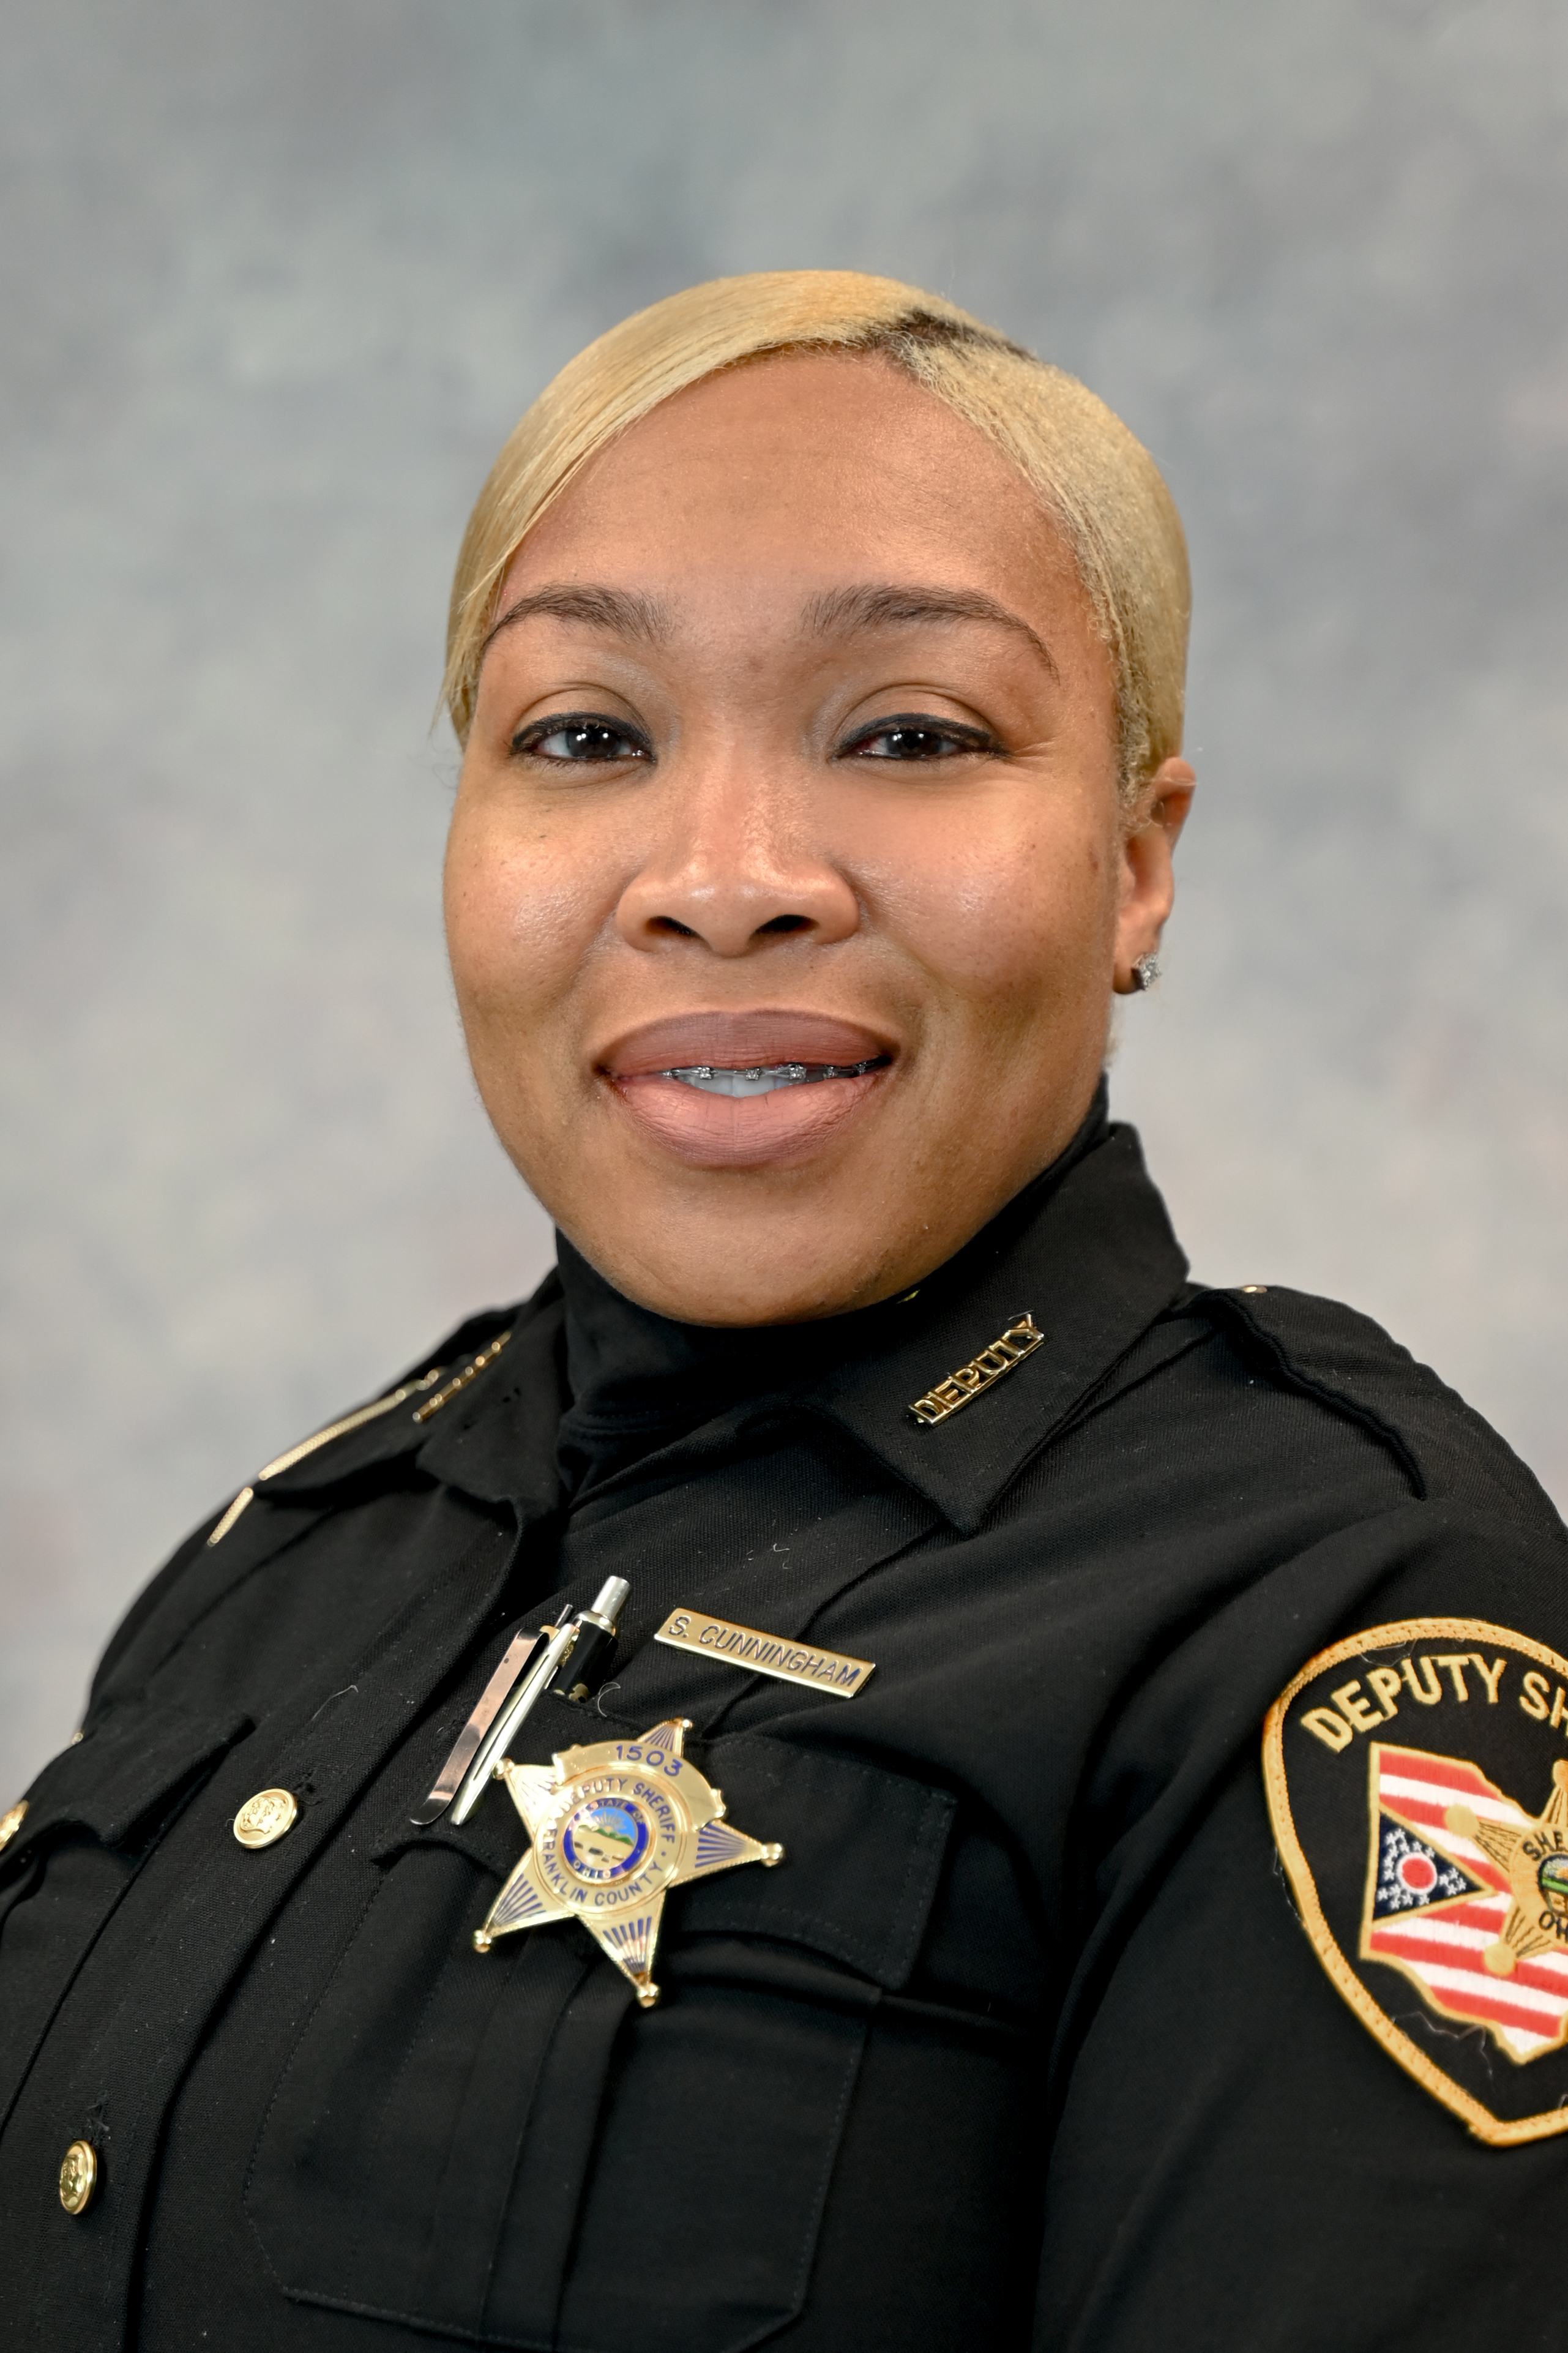 Deputy Stephanie Cunningham